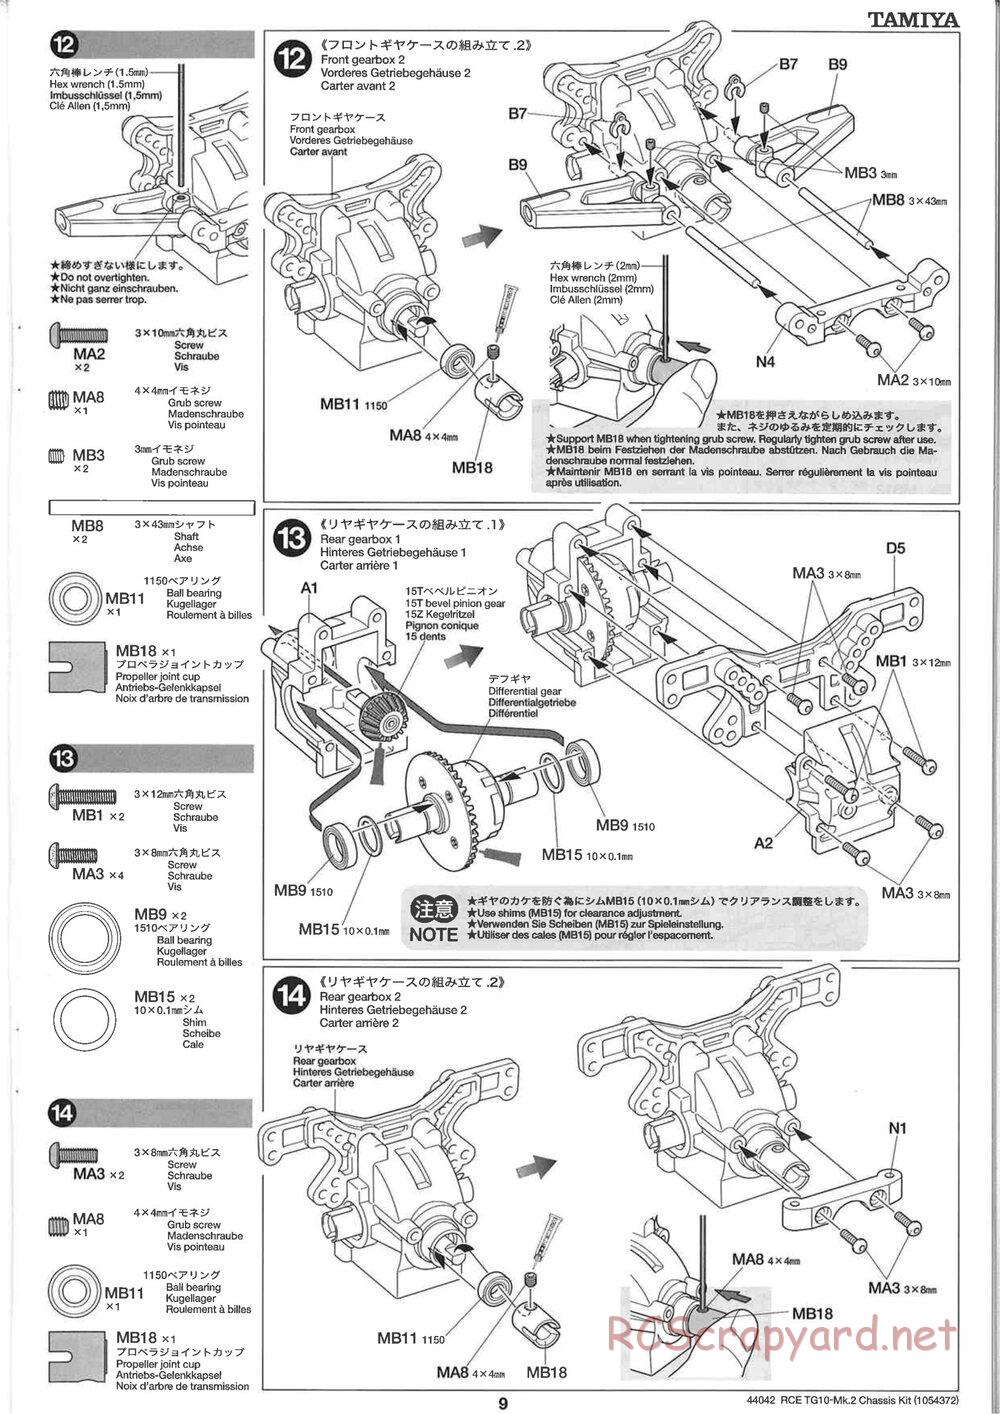 Tamiya - TG10 Mk.2 Chassis - Manual - Page 9